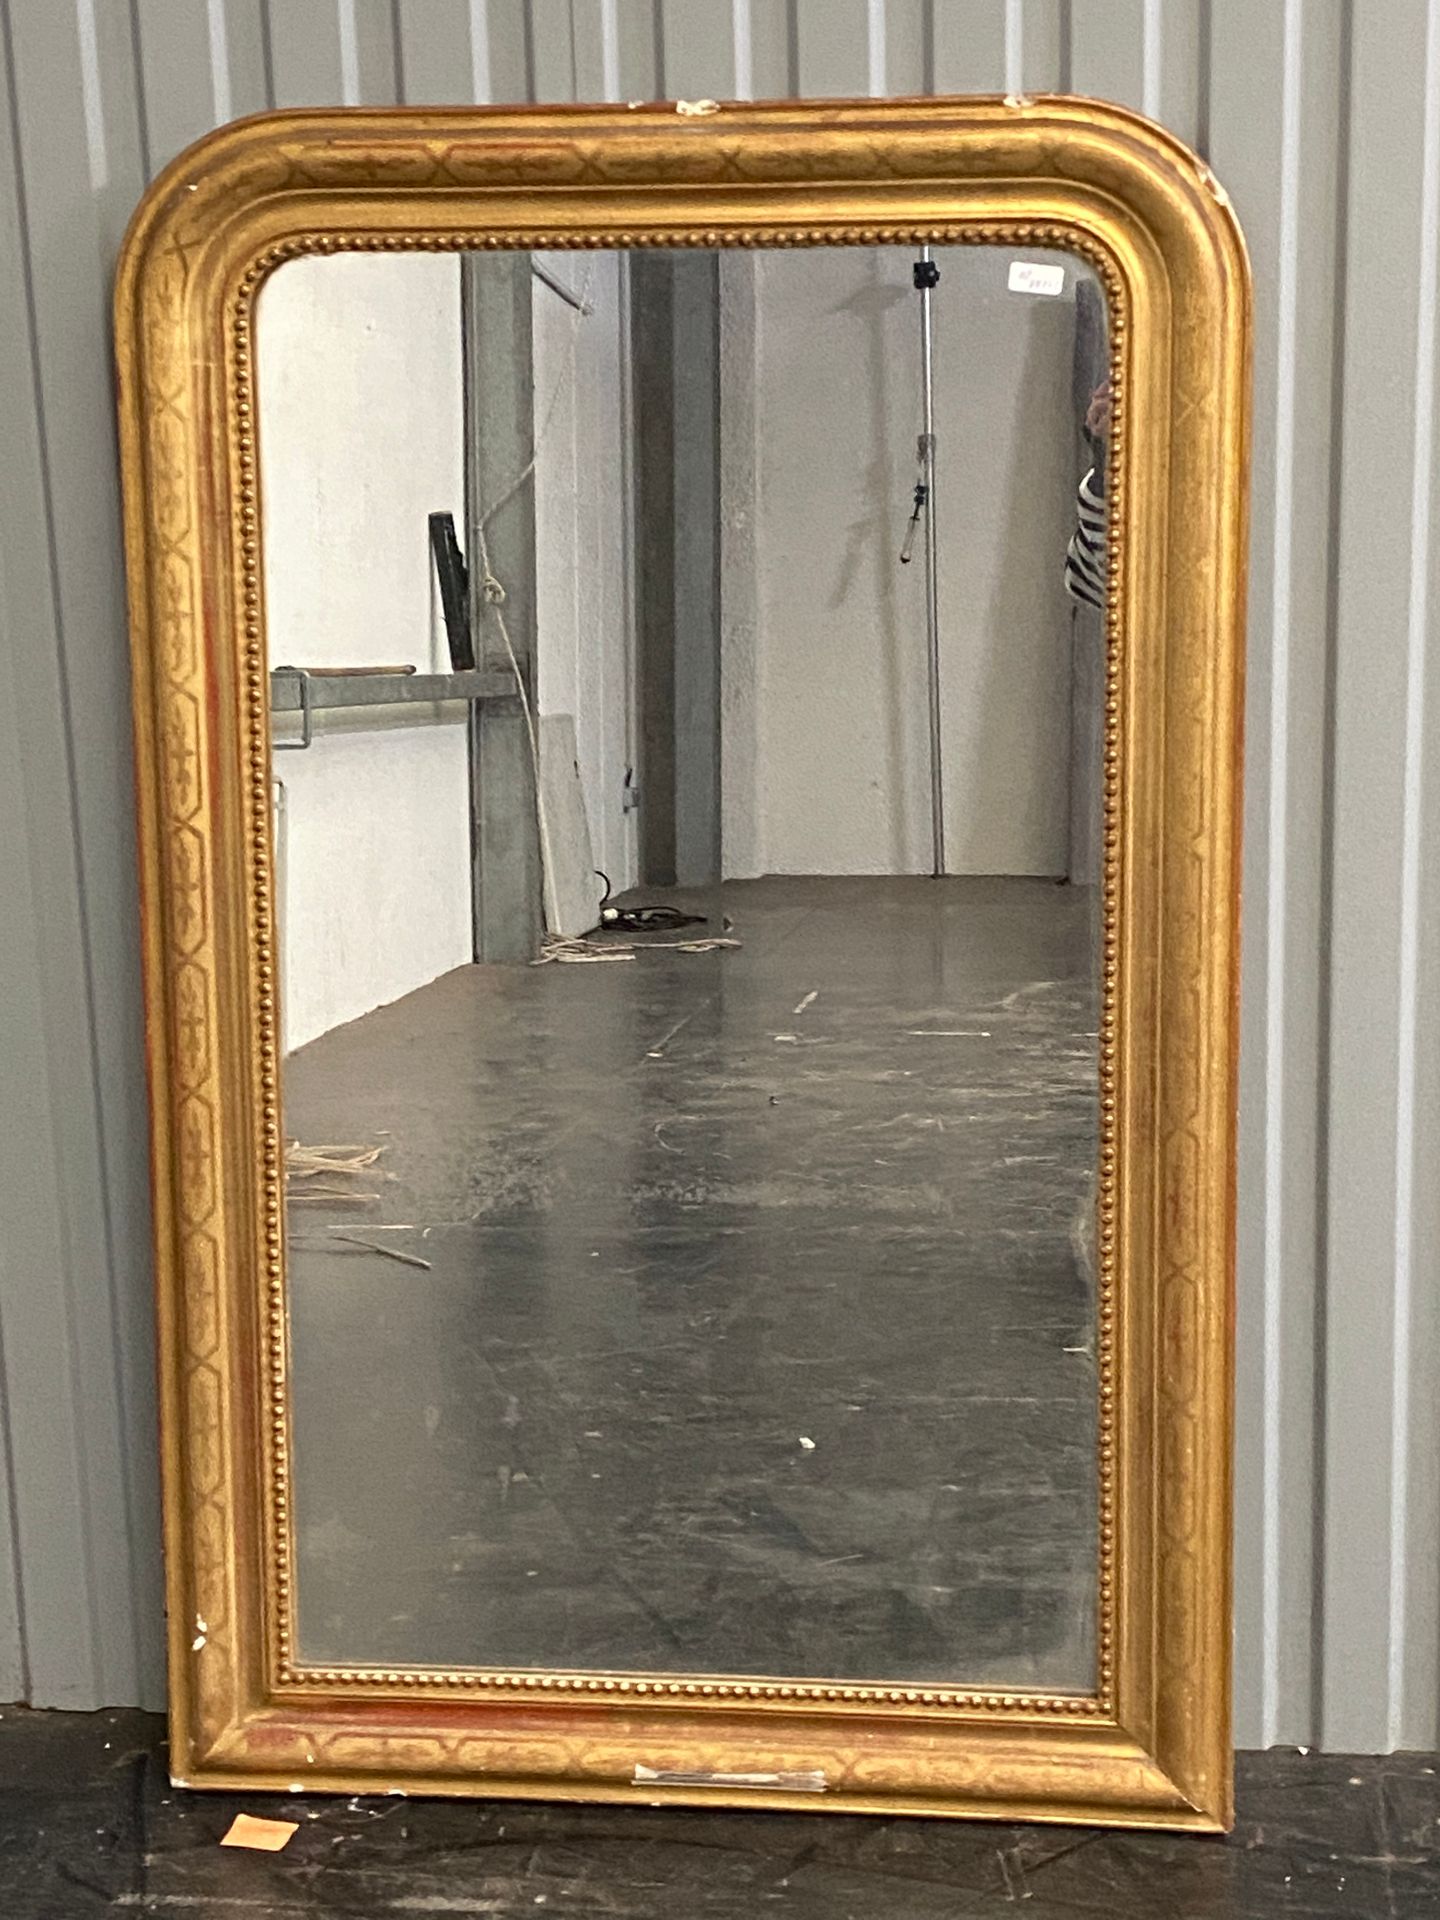 Null 鎏金框架的壁炉镜。

路易-菲利普时期

134 x 85 cm